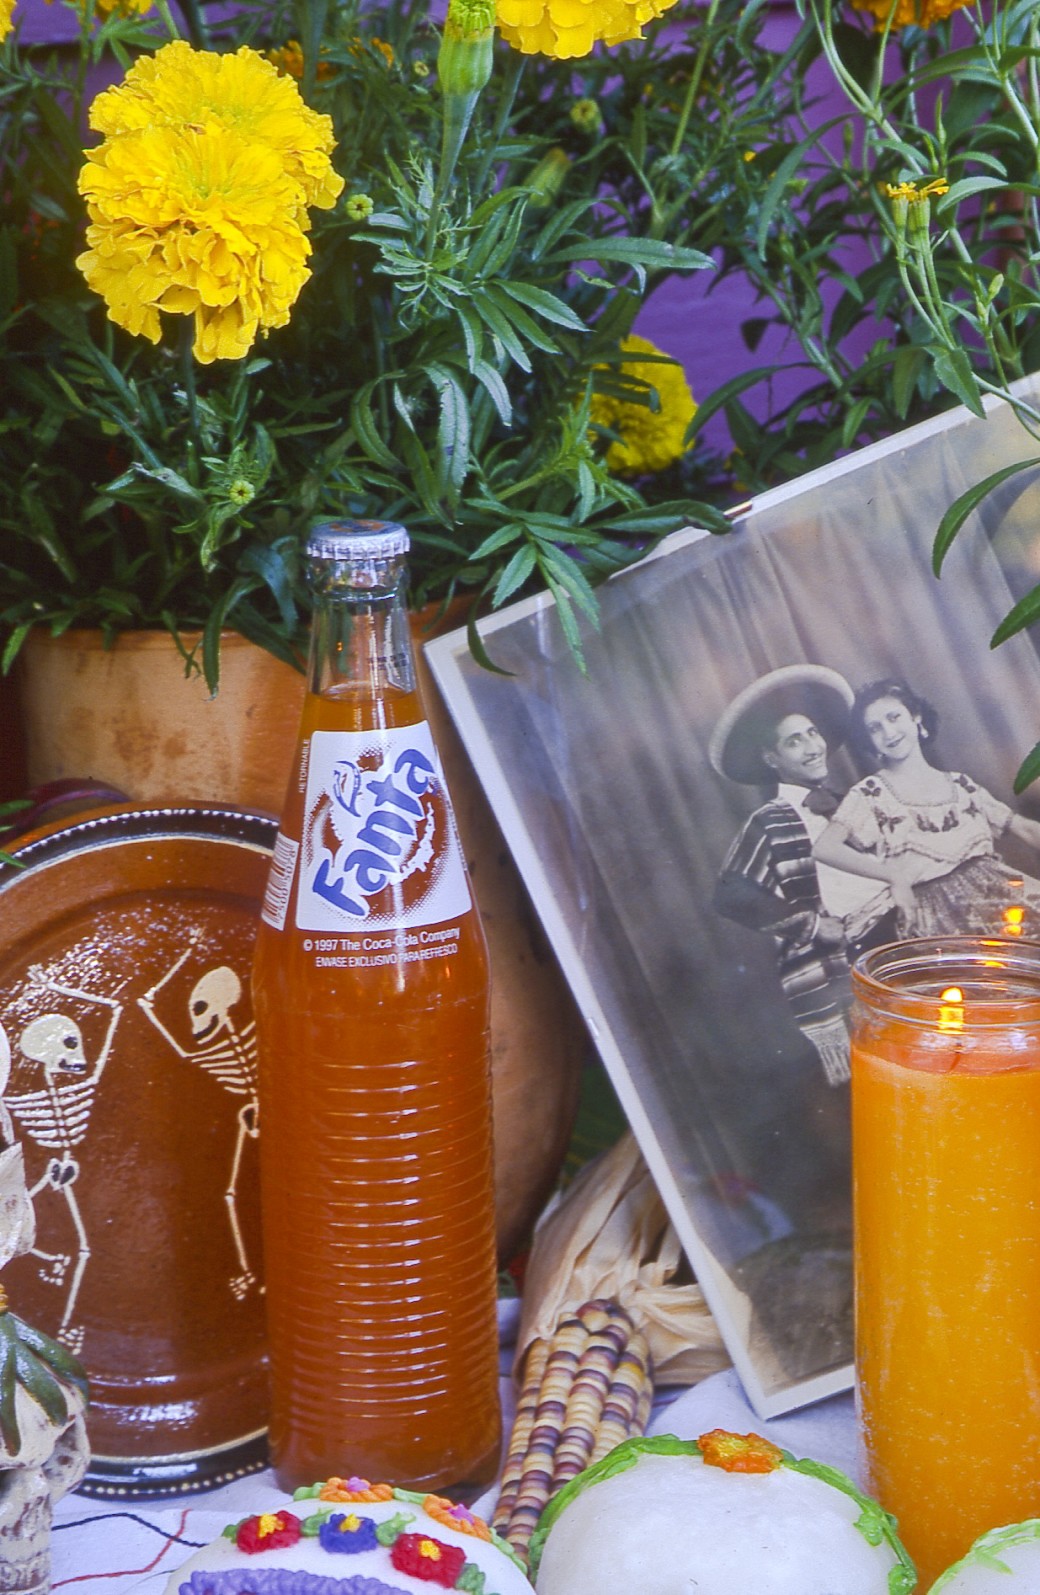 Day of the dead Dia de los Muertos candle marigolds